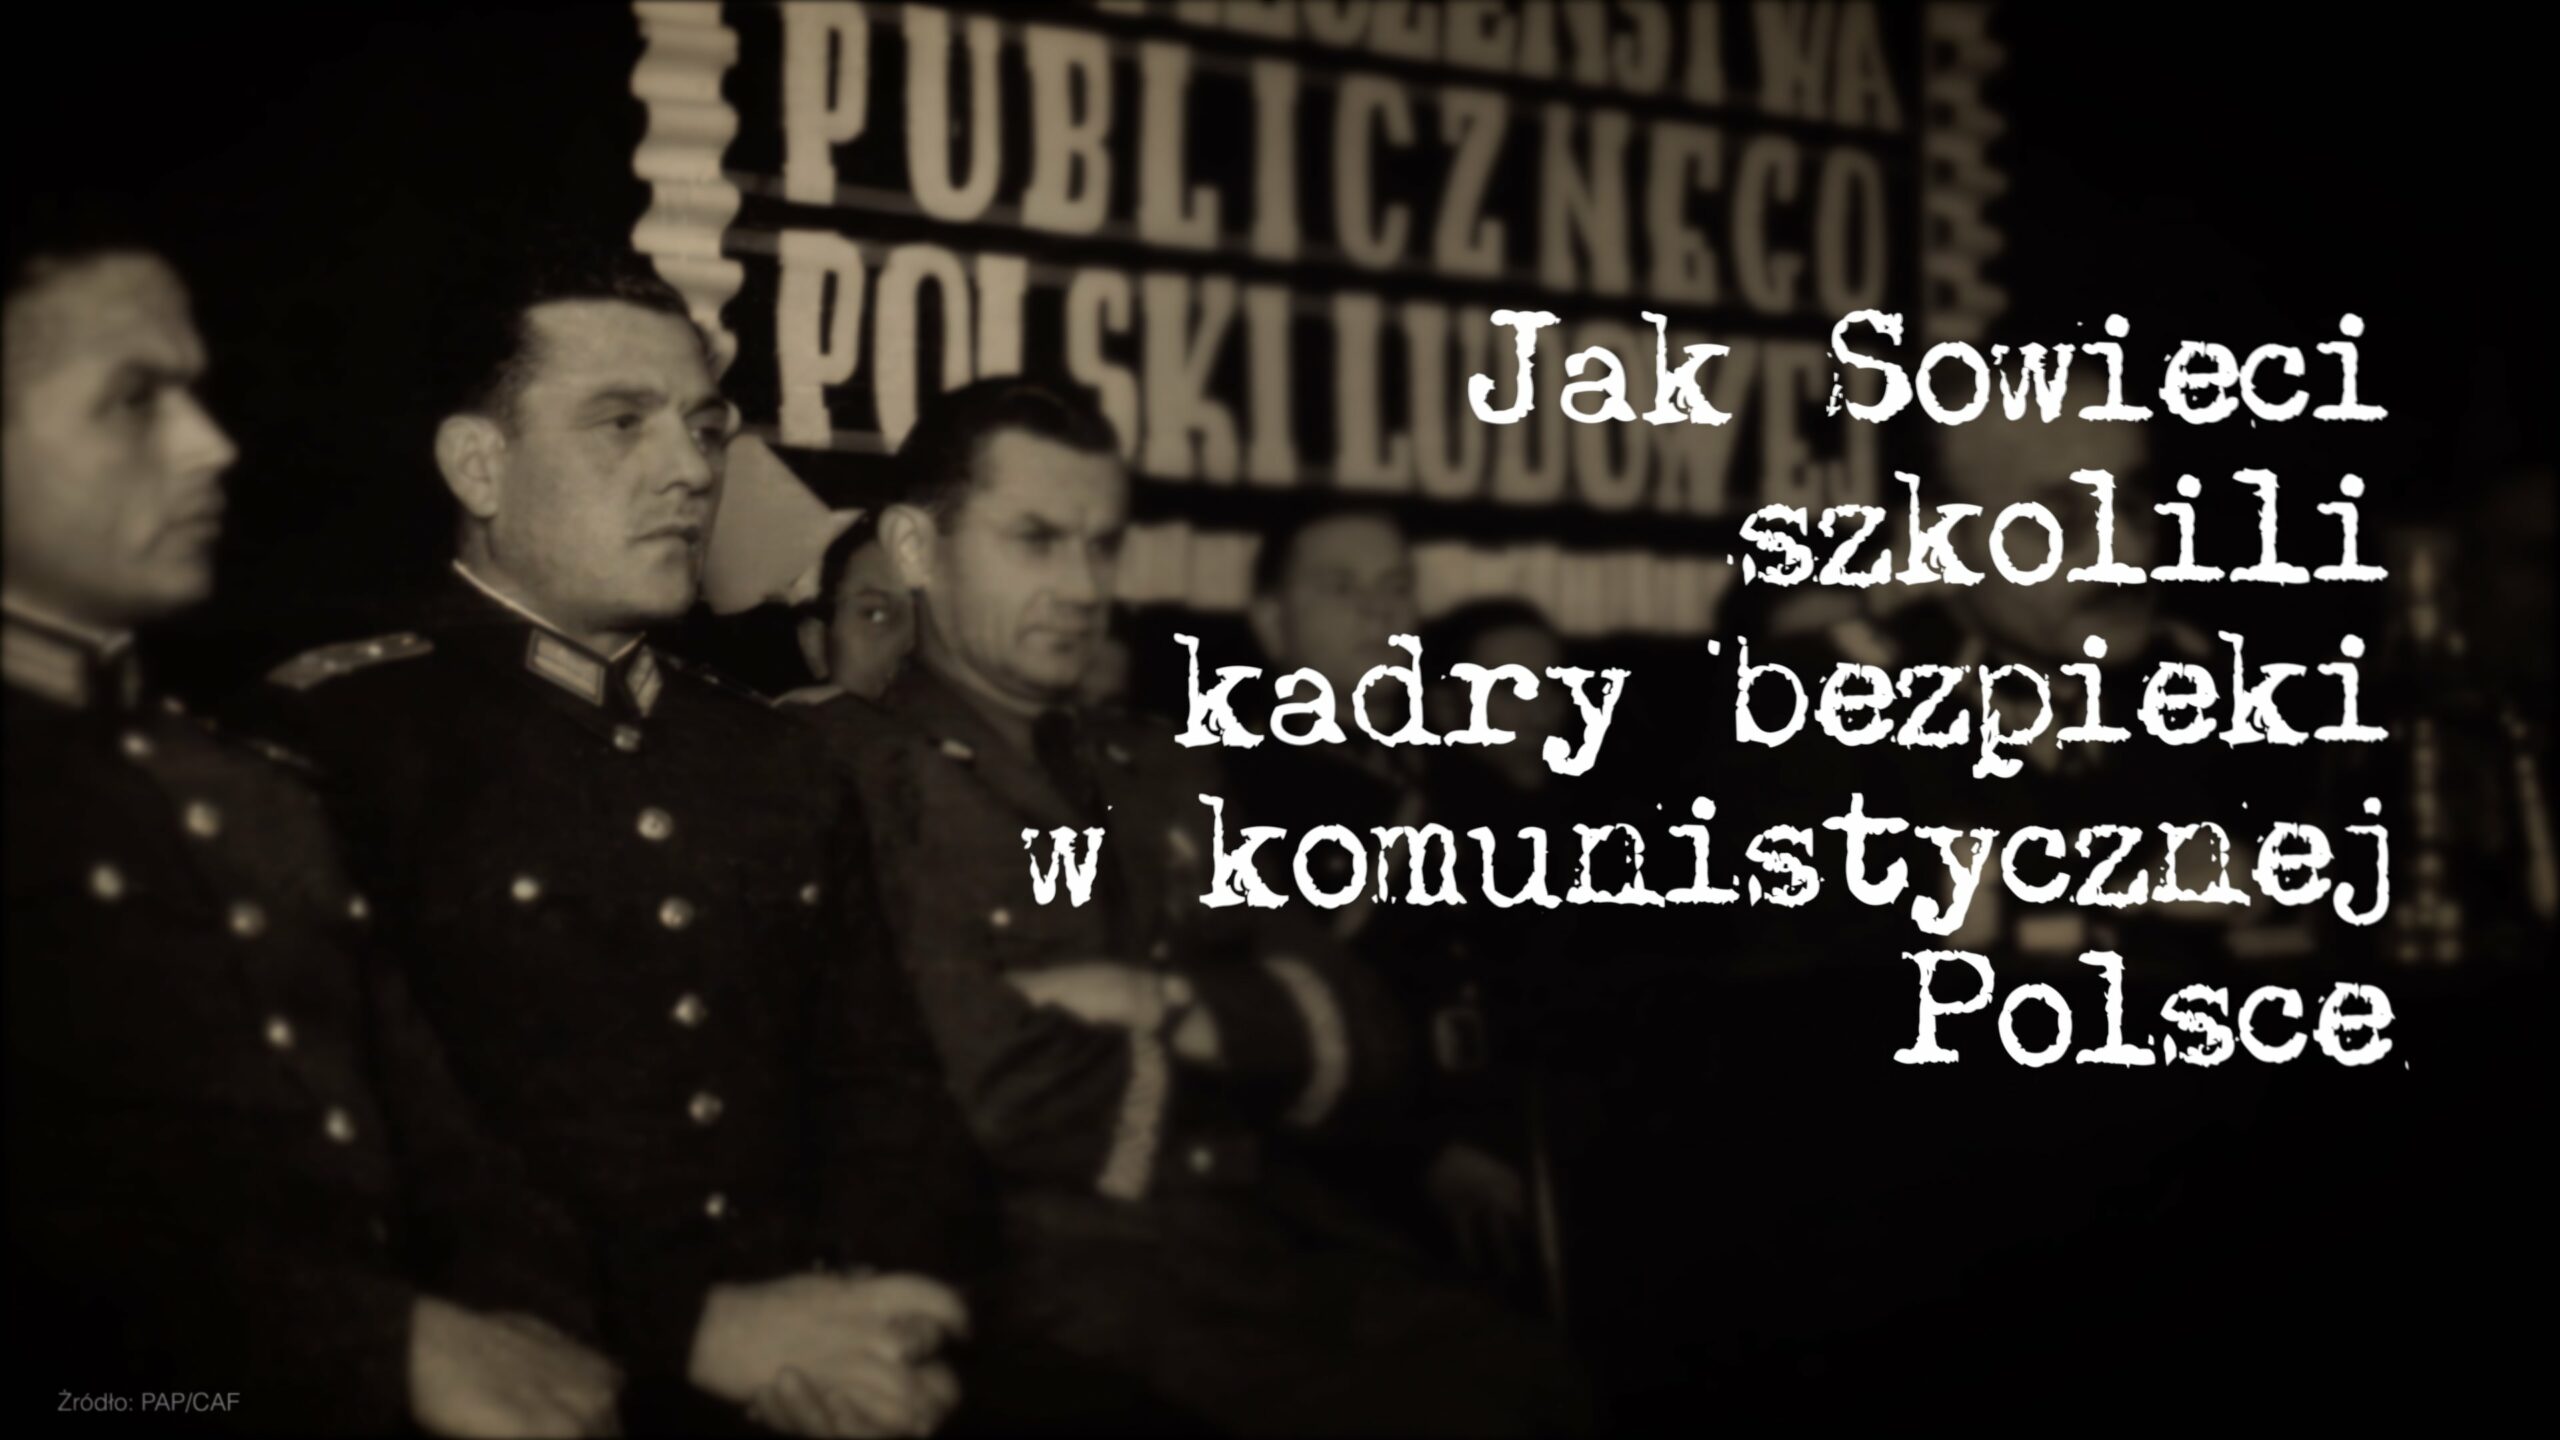 Jak Sowieci szkolili kadry bezpieki w komunistycznej Polsce